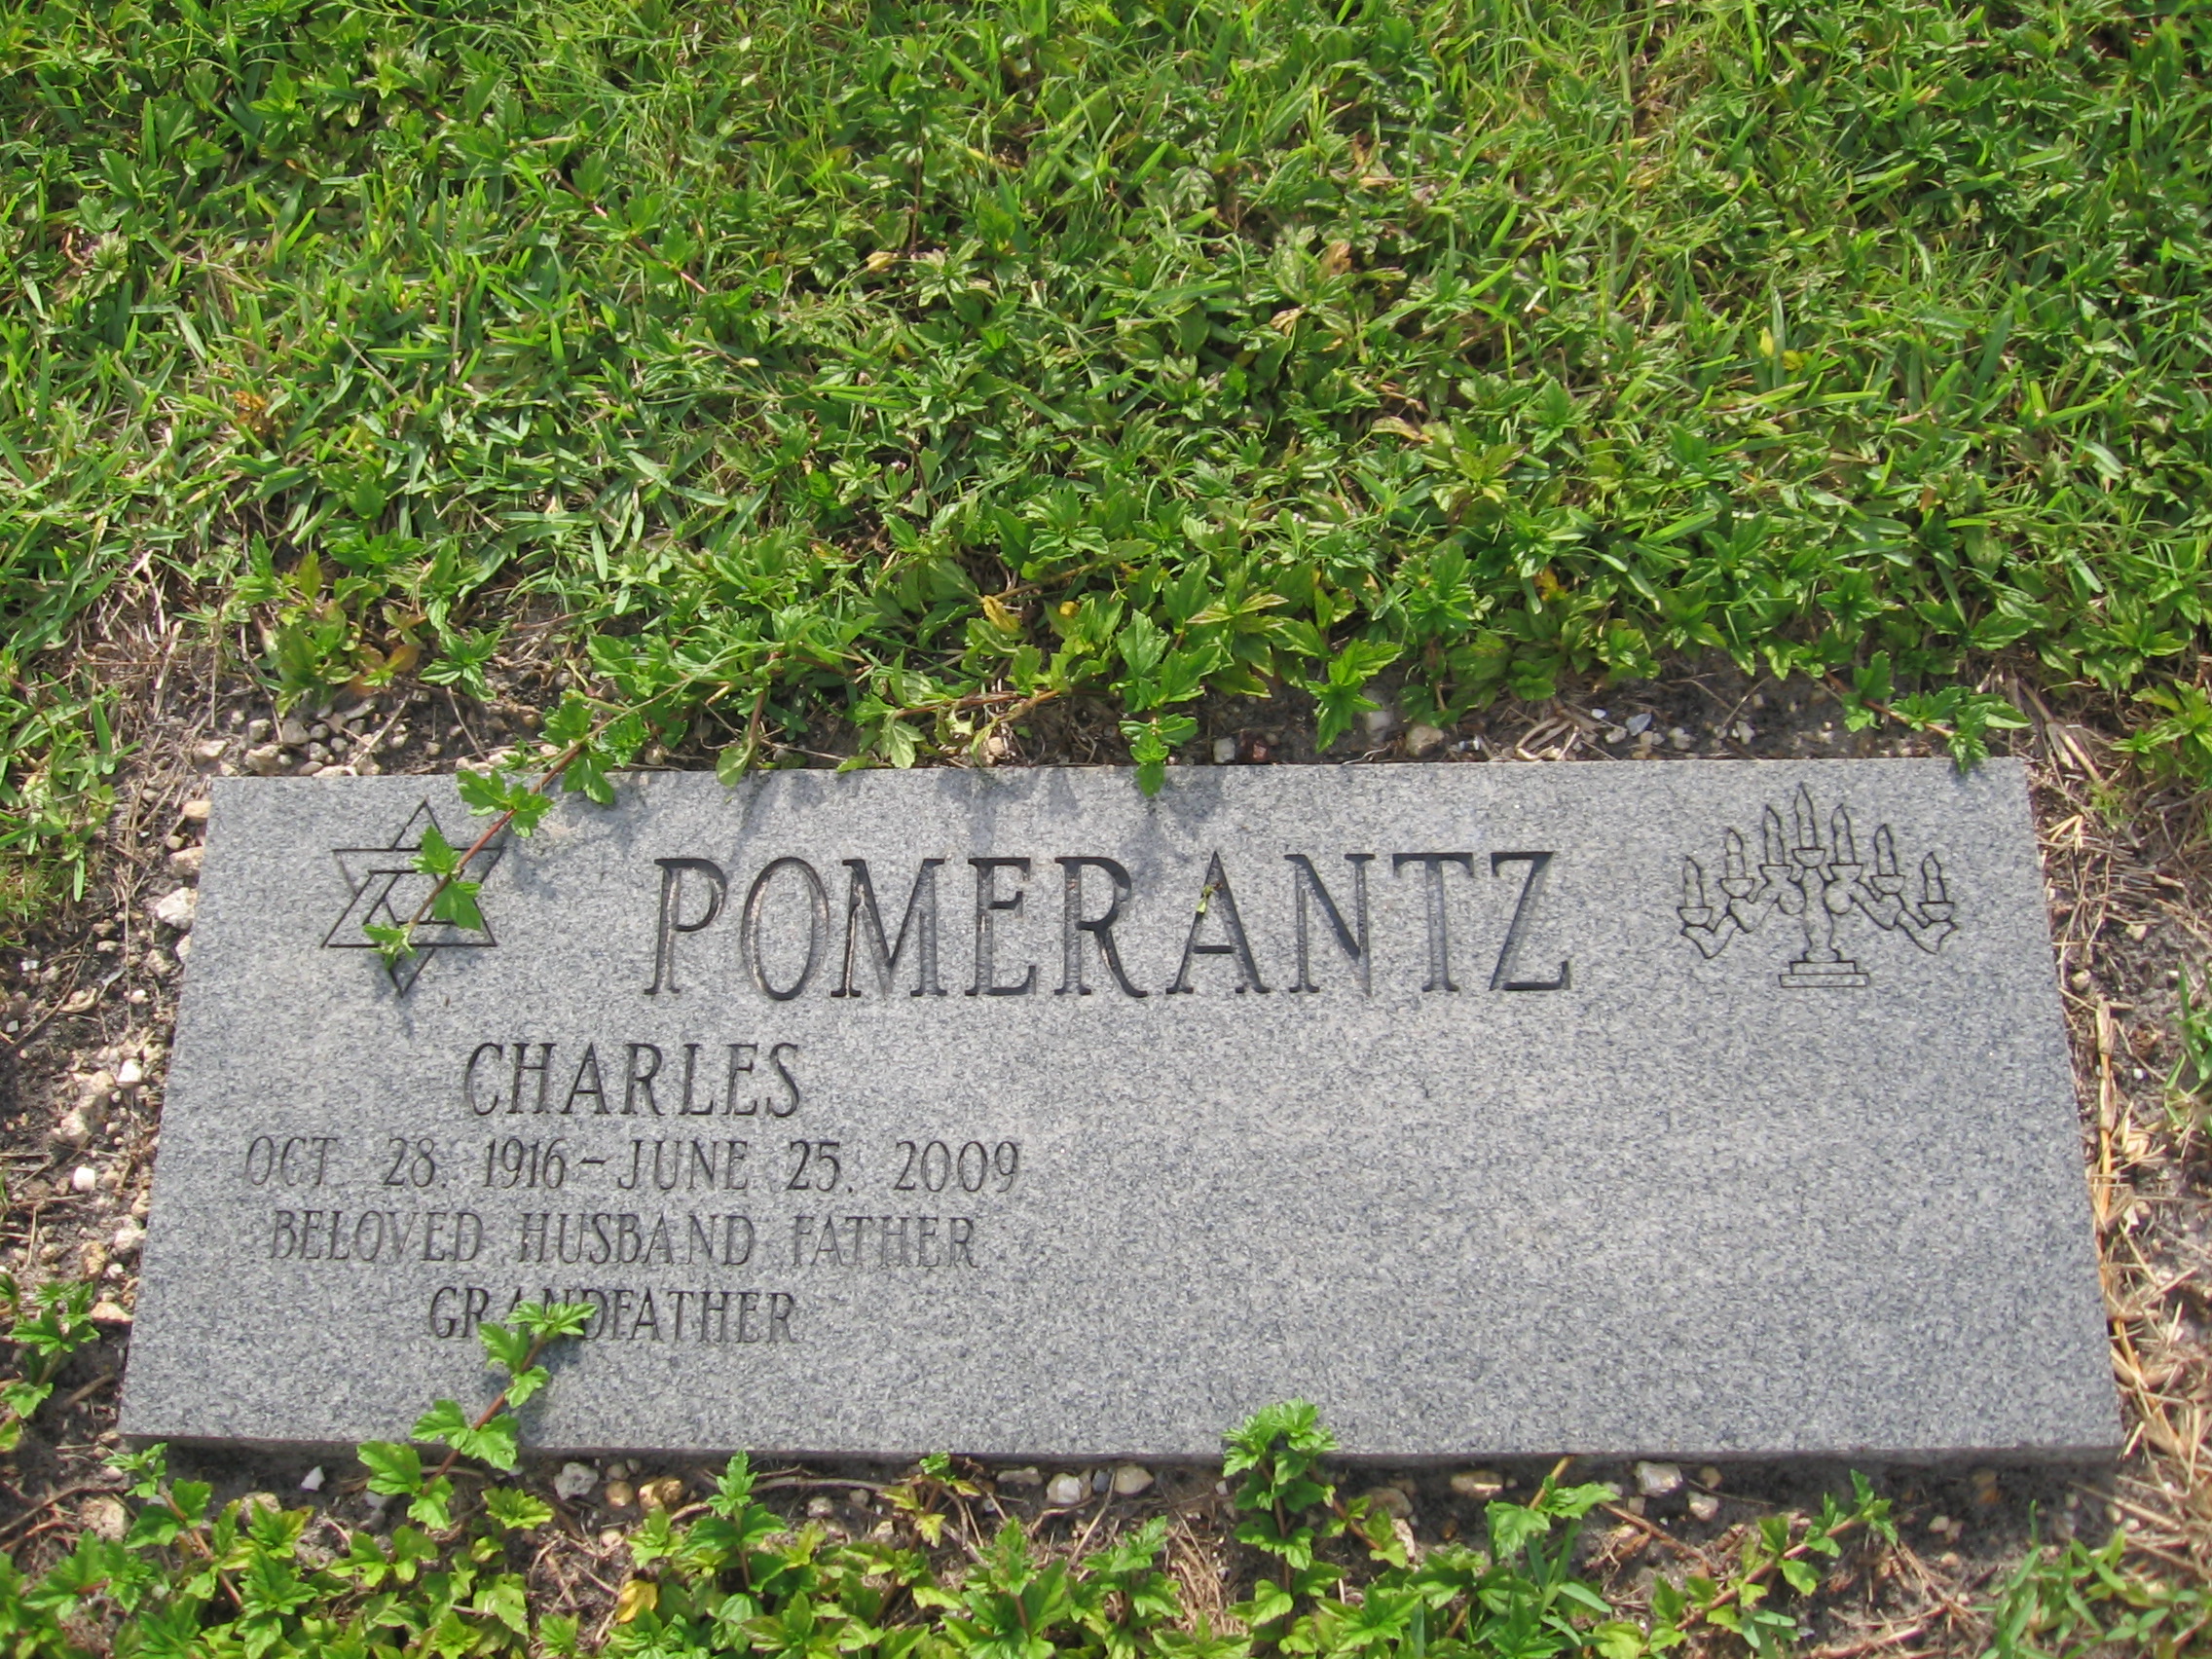 Charles Pomerantz